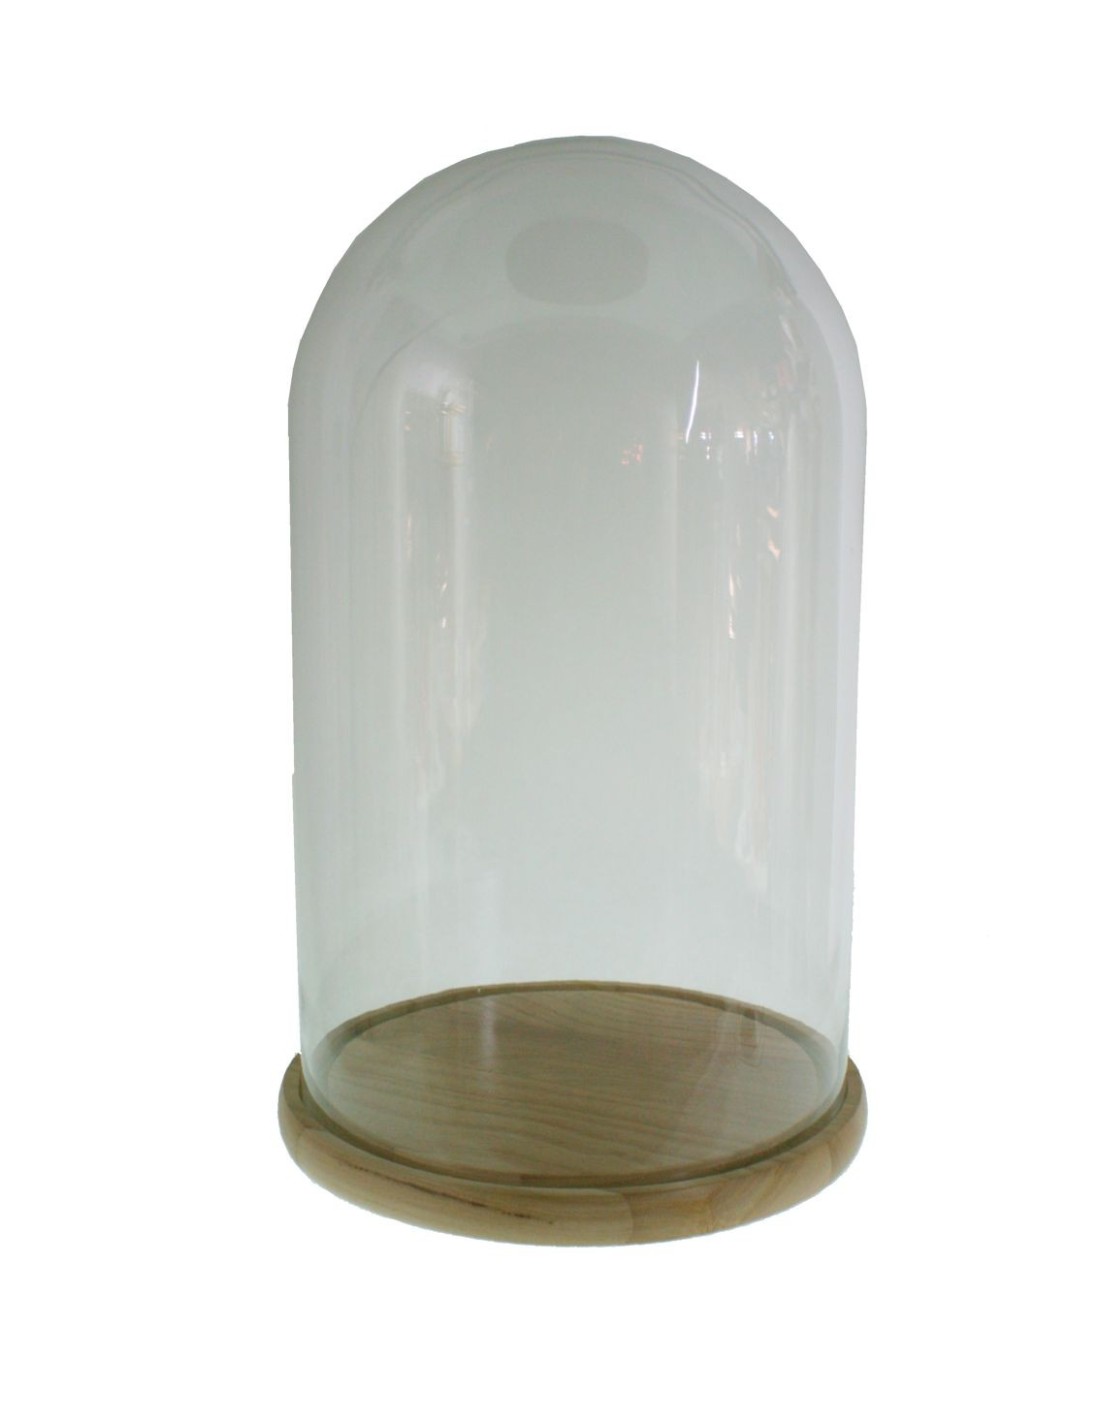 Cúpula campana de cristal alta con base de madera para exposición de objeto decorativos